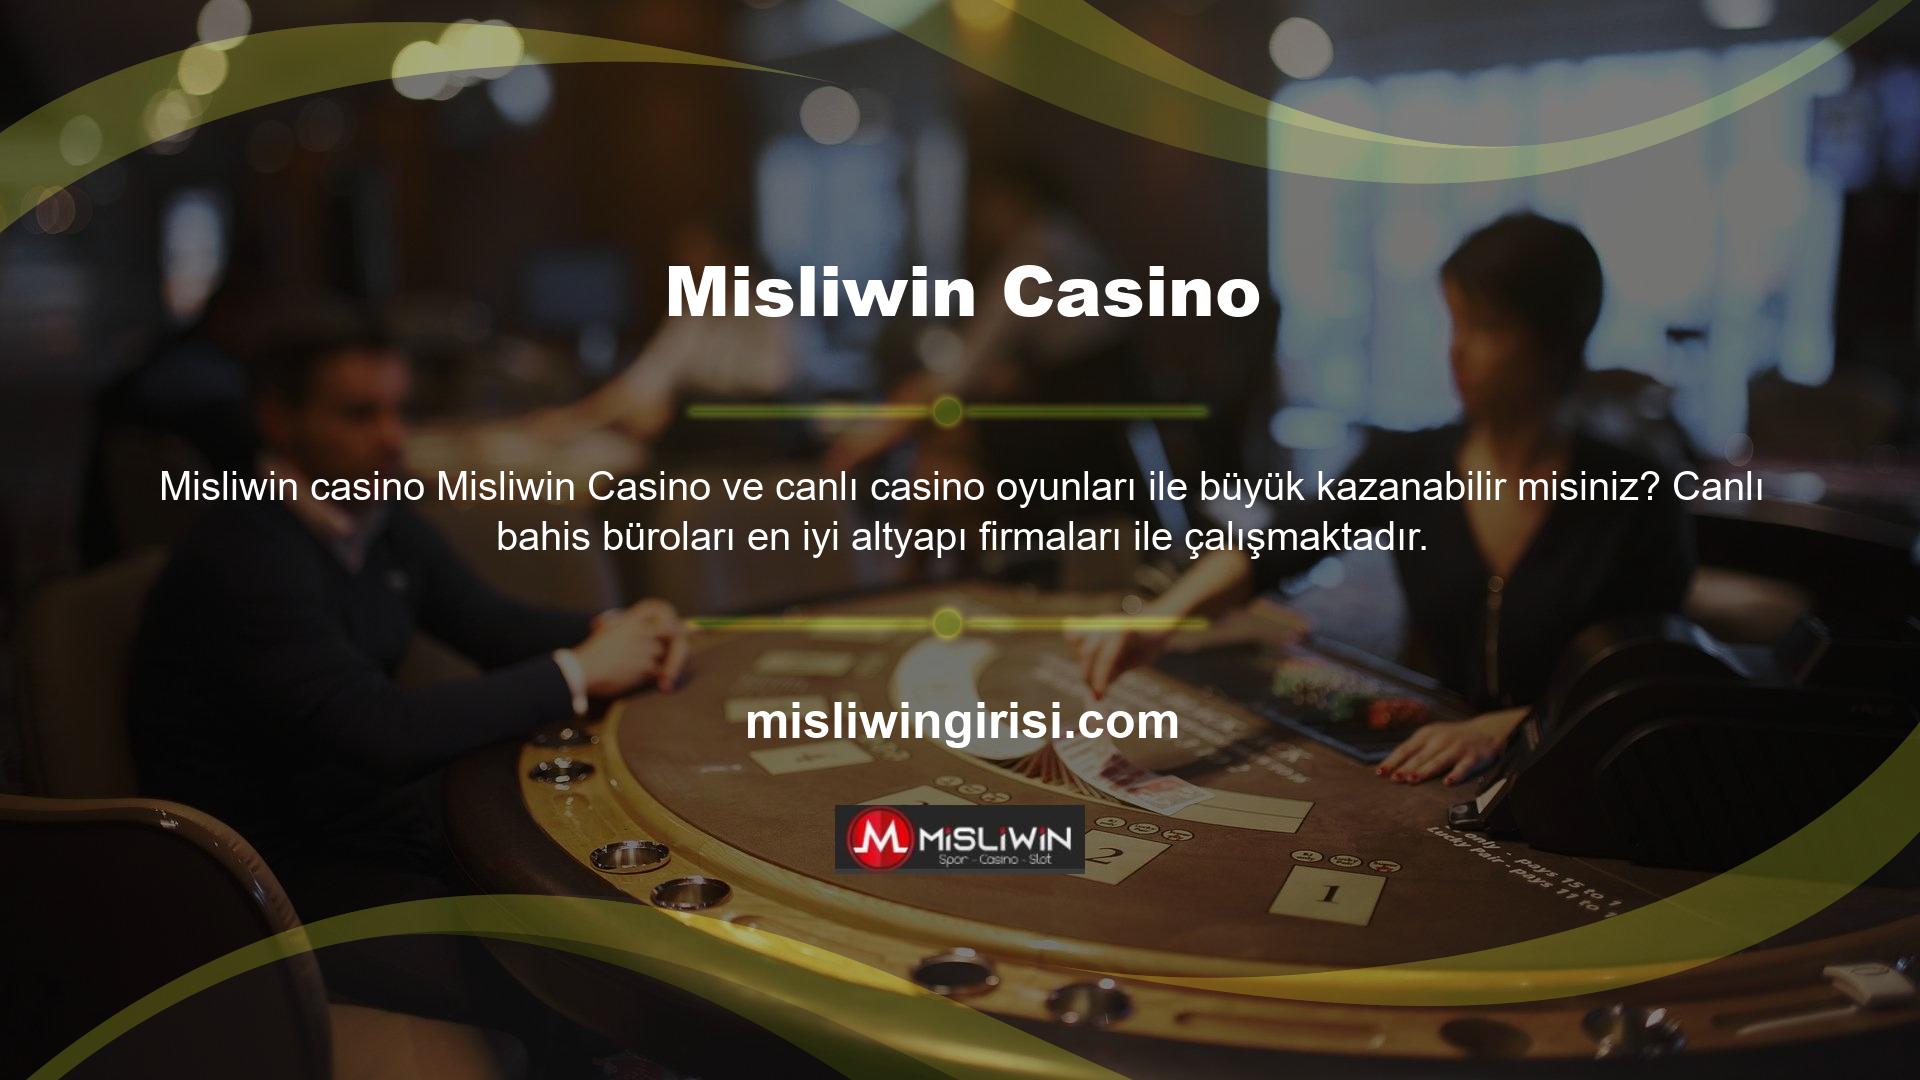 Bu, casino hizmetinde bulunan binlerce farklı oyun arasından şansınızı denemenizi sağlar